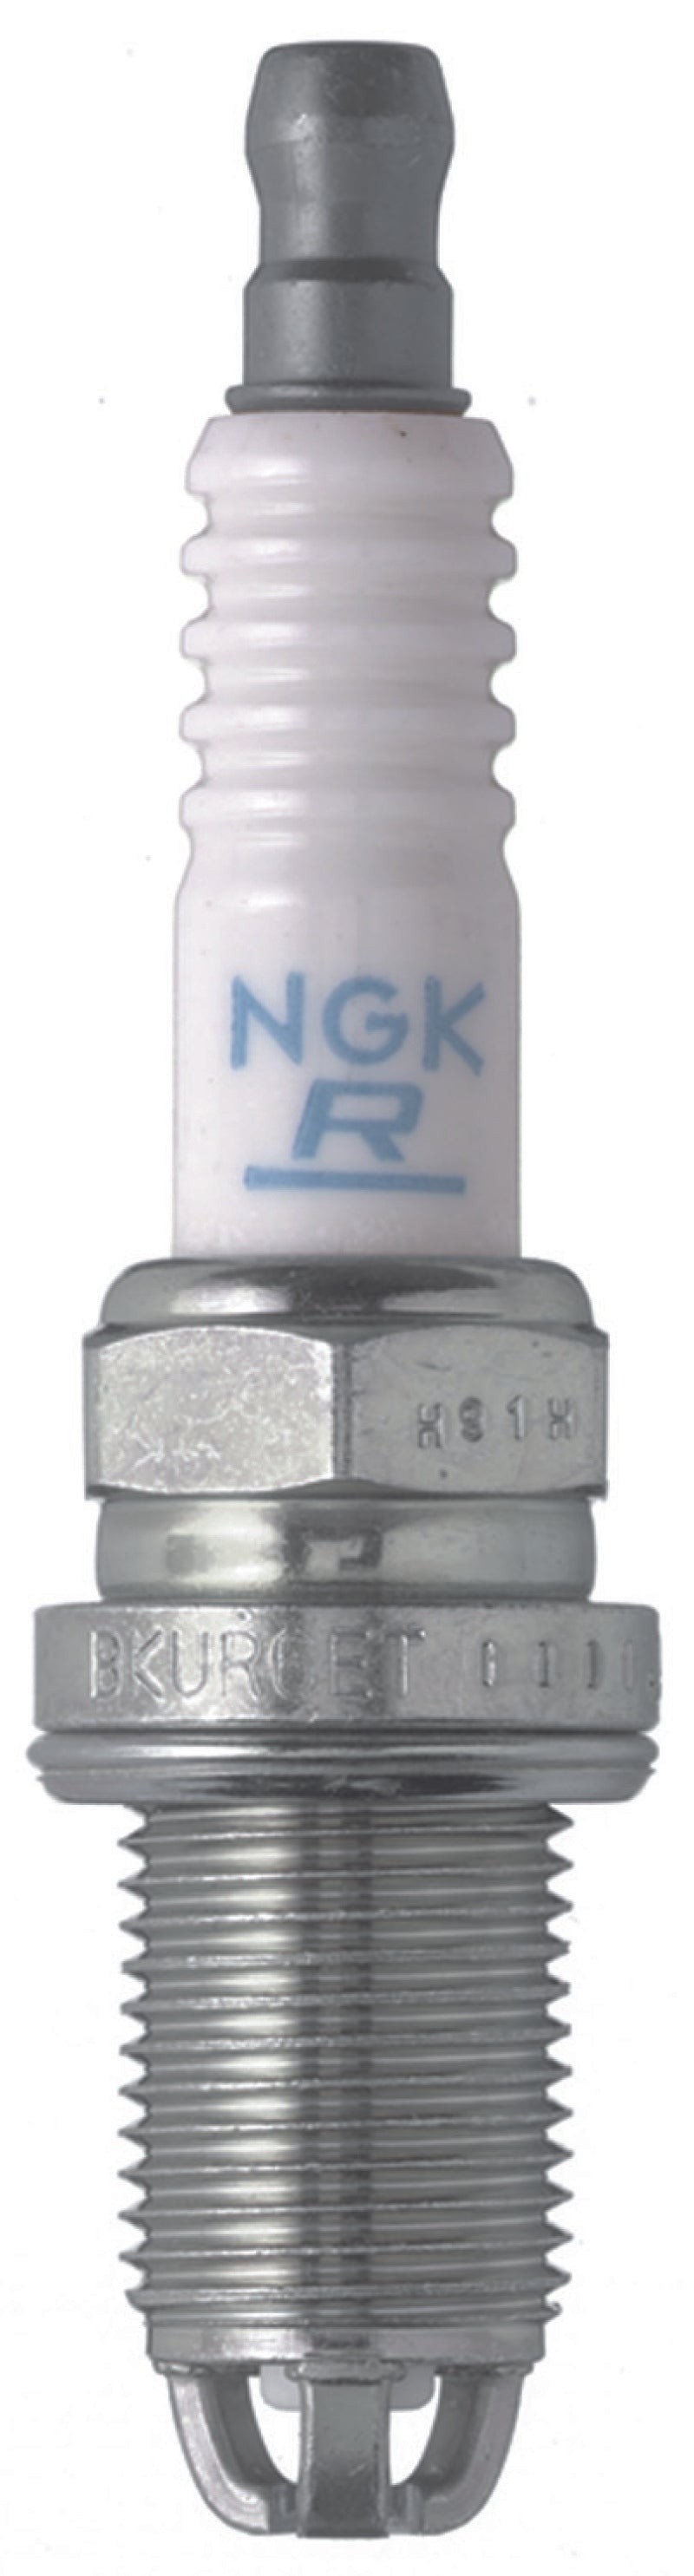 NGK Standard Spark Plug Box of 4 (BKUR6ETB)